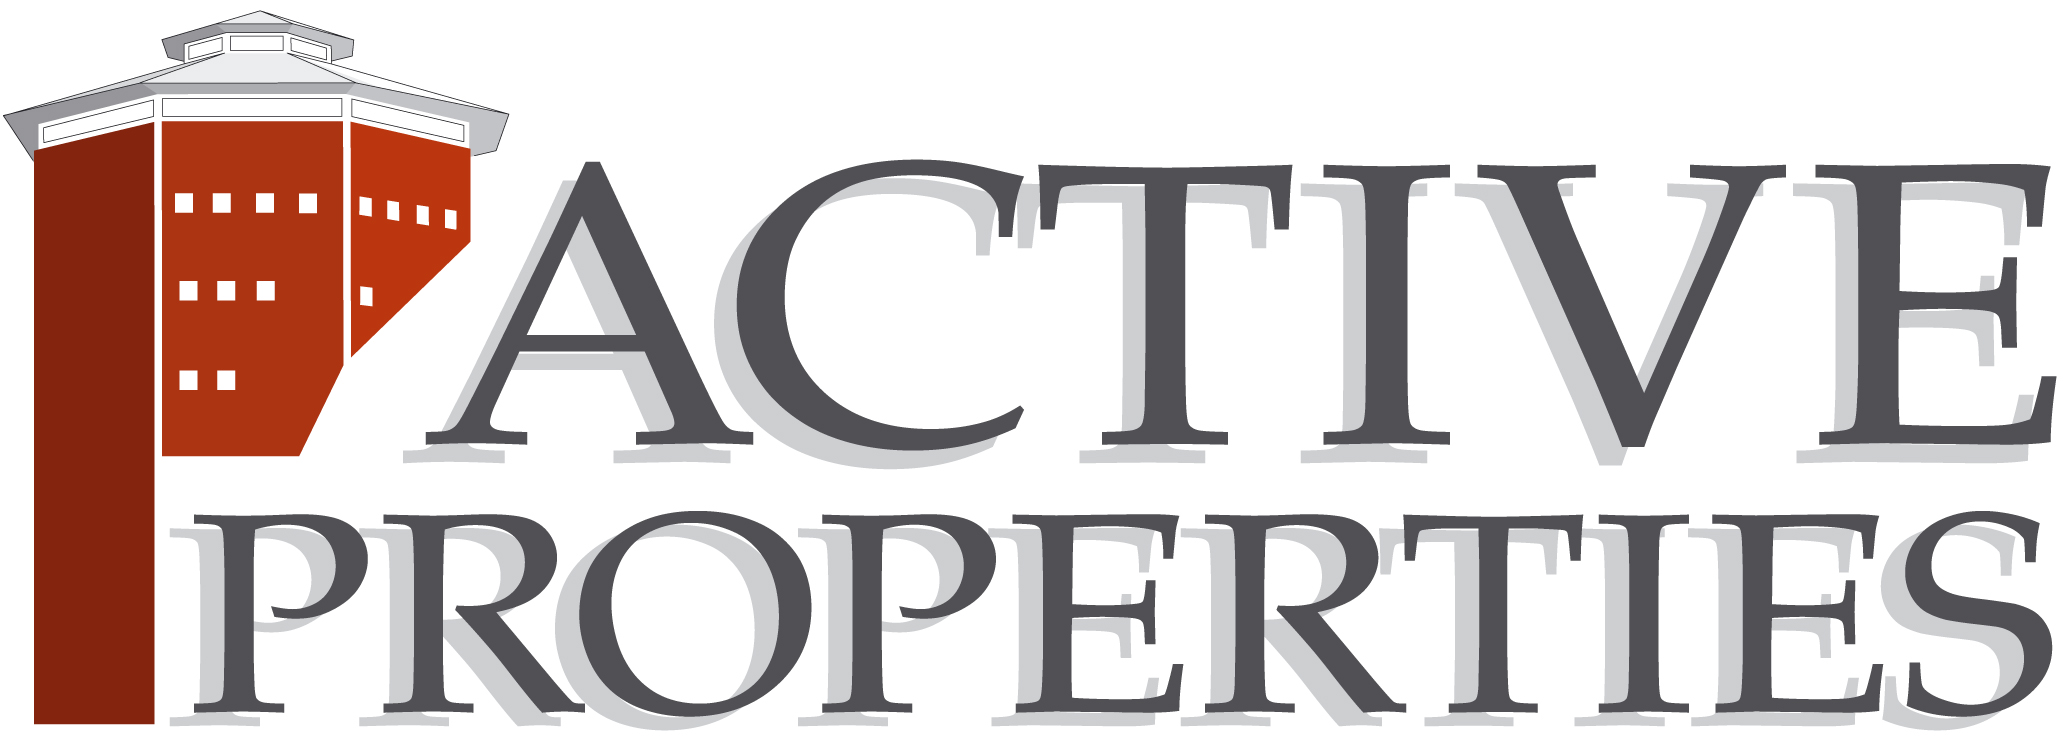 Active Properties B logo